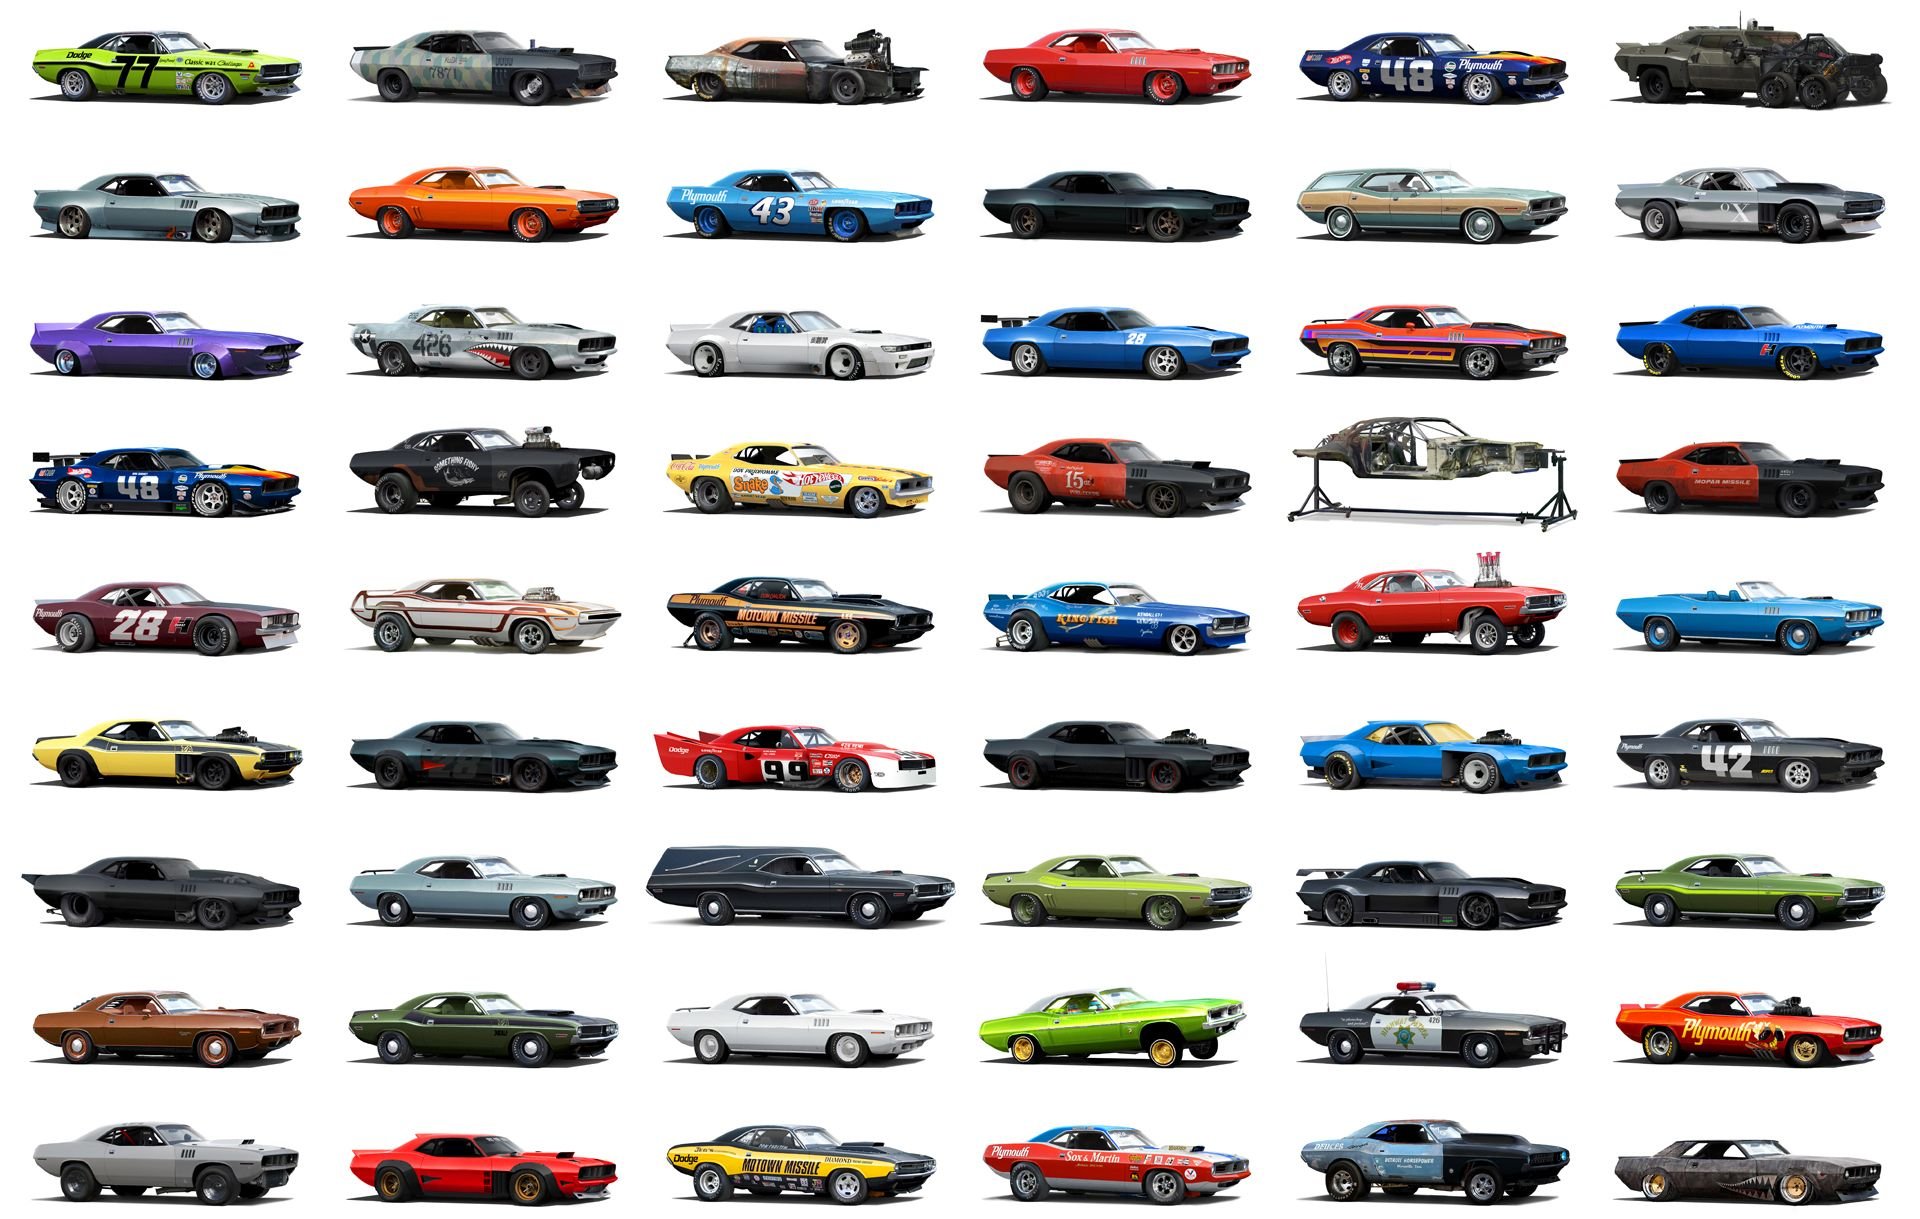 Картинки машин с названиями. Разные виды машин. Машины разных марок. Разноцветные автомобили. Коллекция машин.